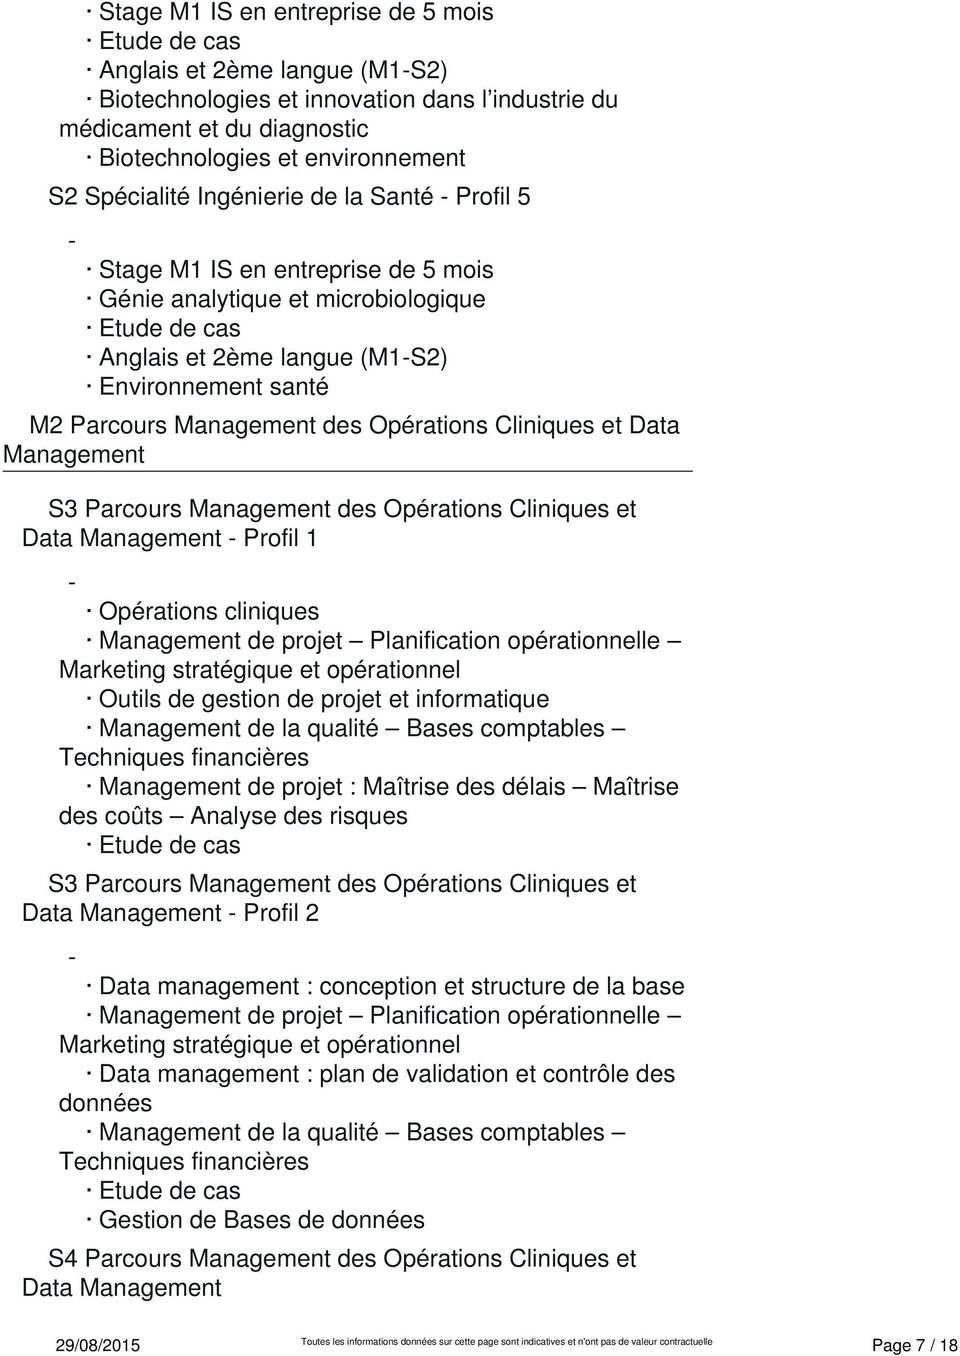 Data Management Profil 1 Opérations cliniques Management de projet Planification opérationnelle Marketing stratégique et opérationnel Outils de gestion de projet et informatique Management de la